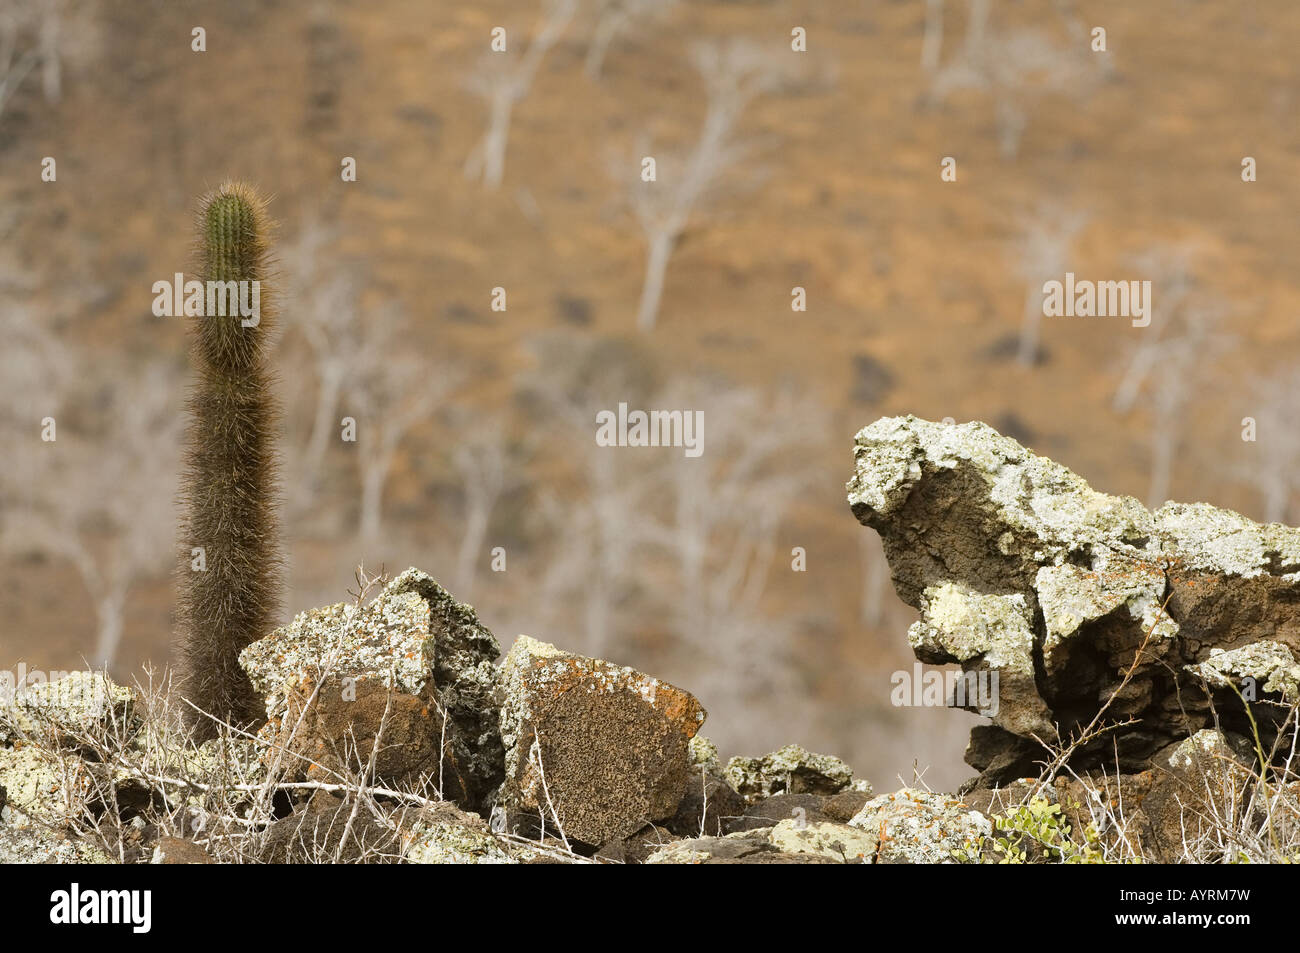 Cactus Brachycereus nesioticus (lave) pousse dans les rochers couverts de lichen, palo santo (Bursera graveolens) Contexte Banque D'Images